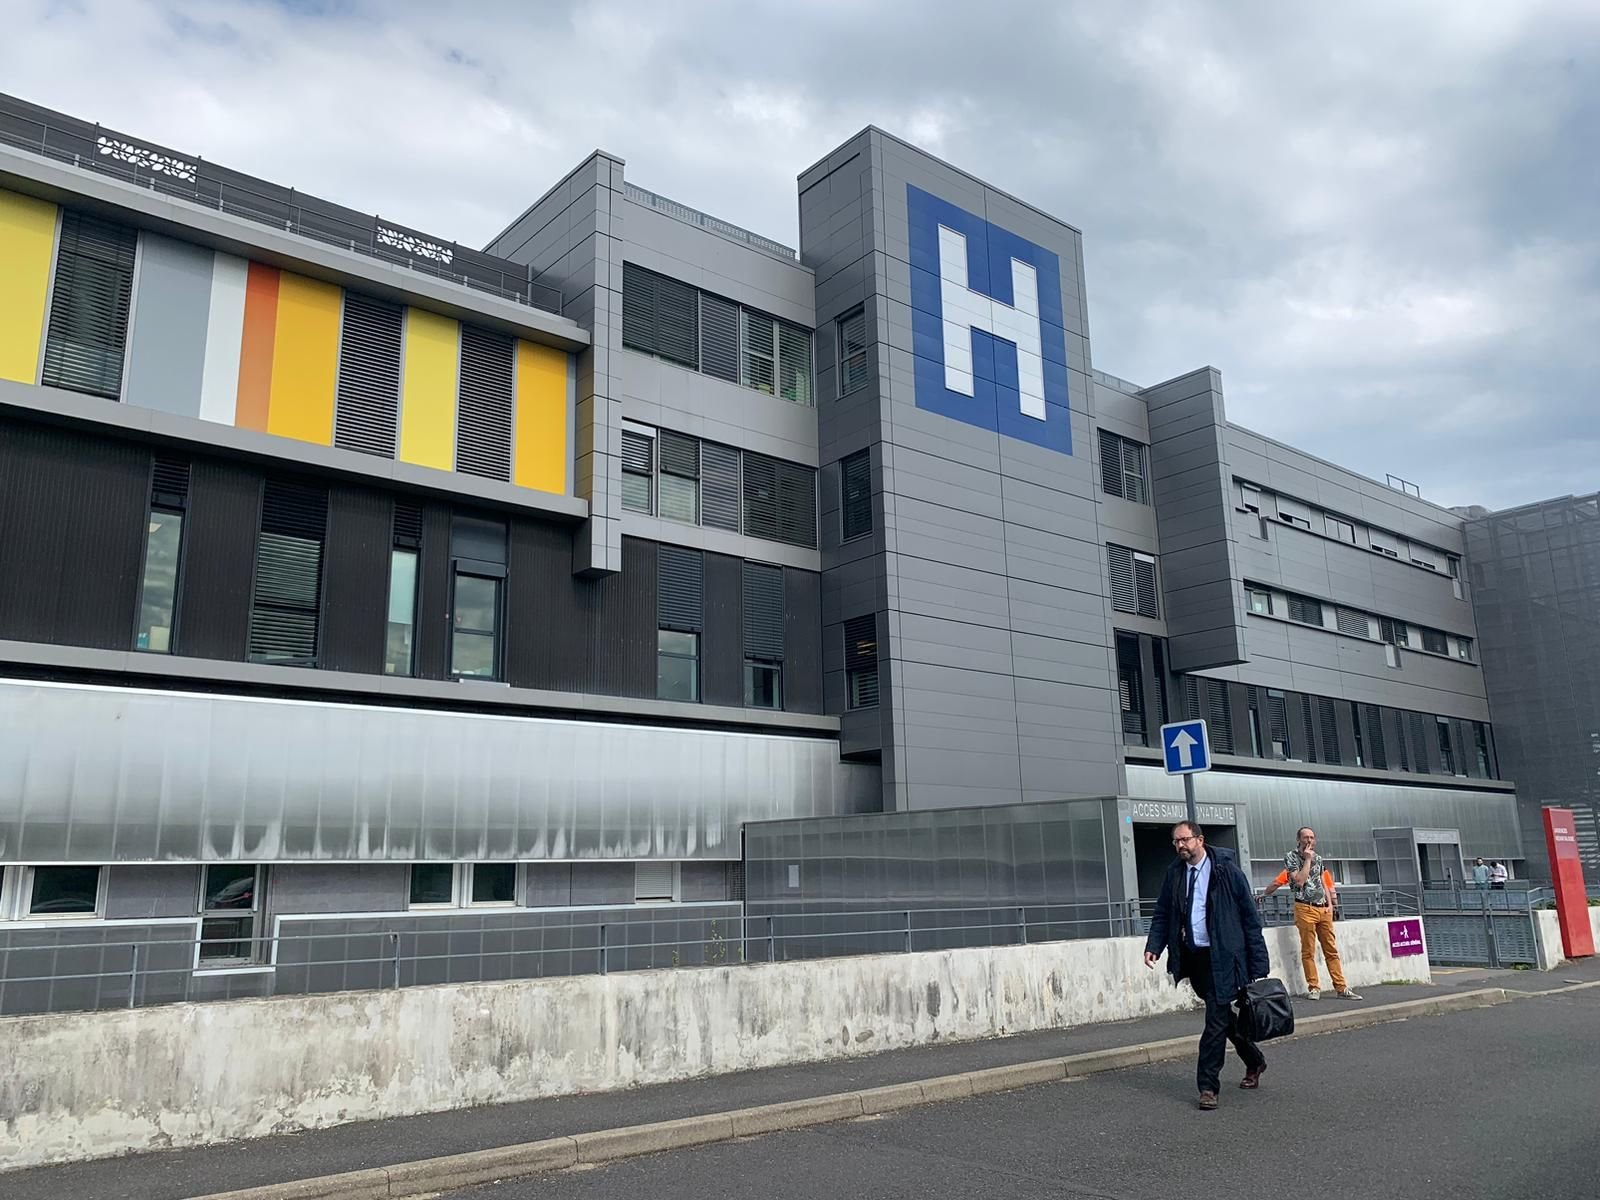 Corbeil-Essonnes. Pendant la nuit du 20 au 21 août 2022, 800 personnes étaient hospitalisées dans le Centre hospitalier Sud francilien. LP/Candice Doussot